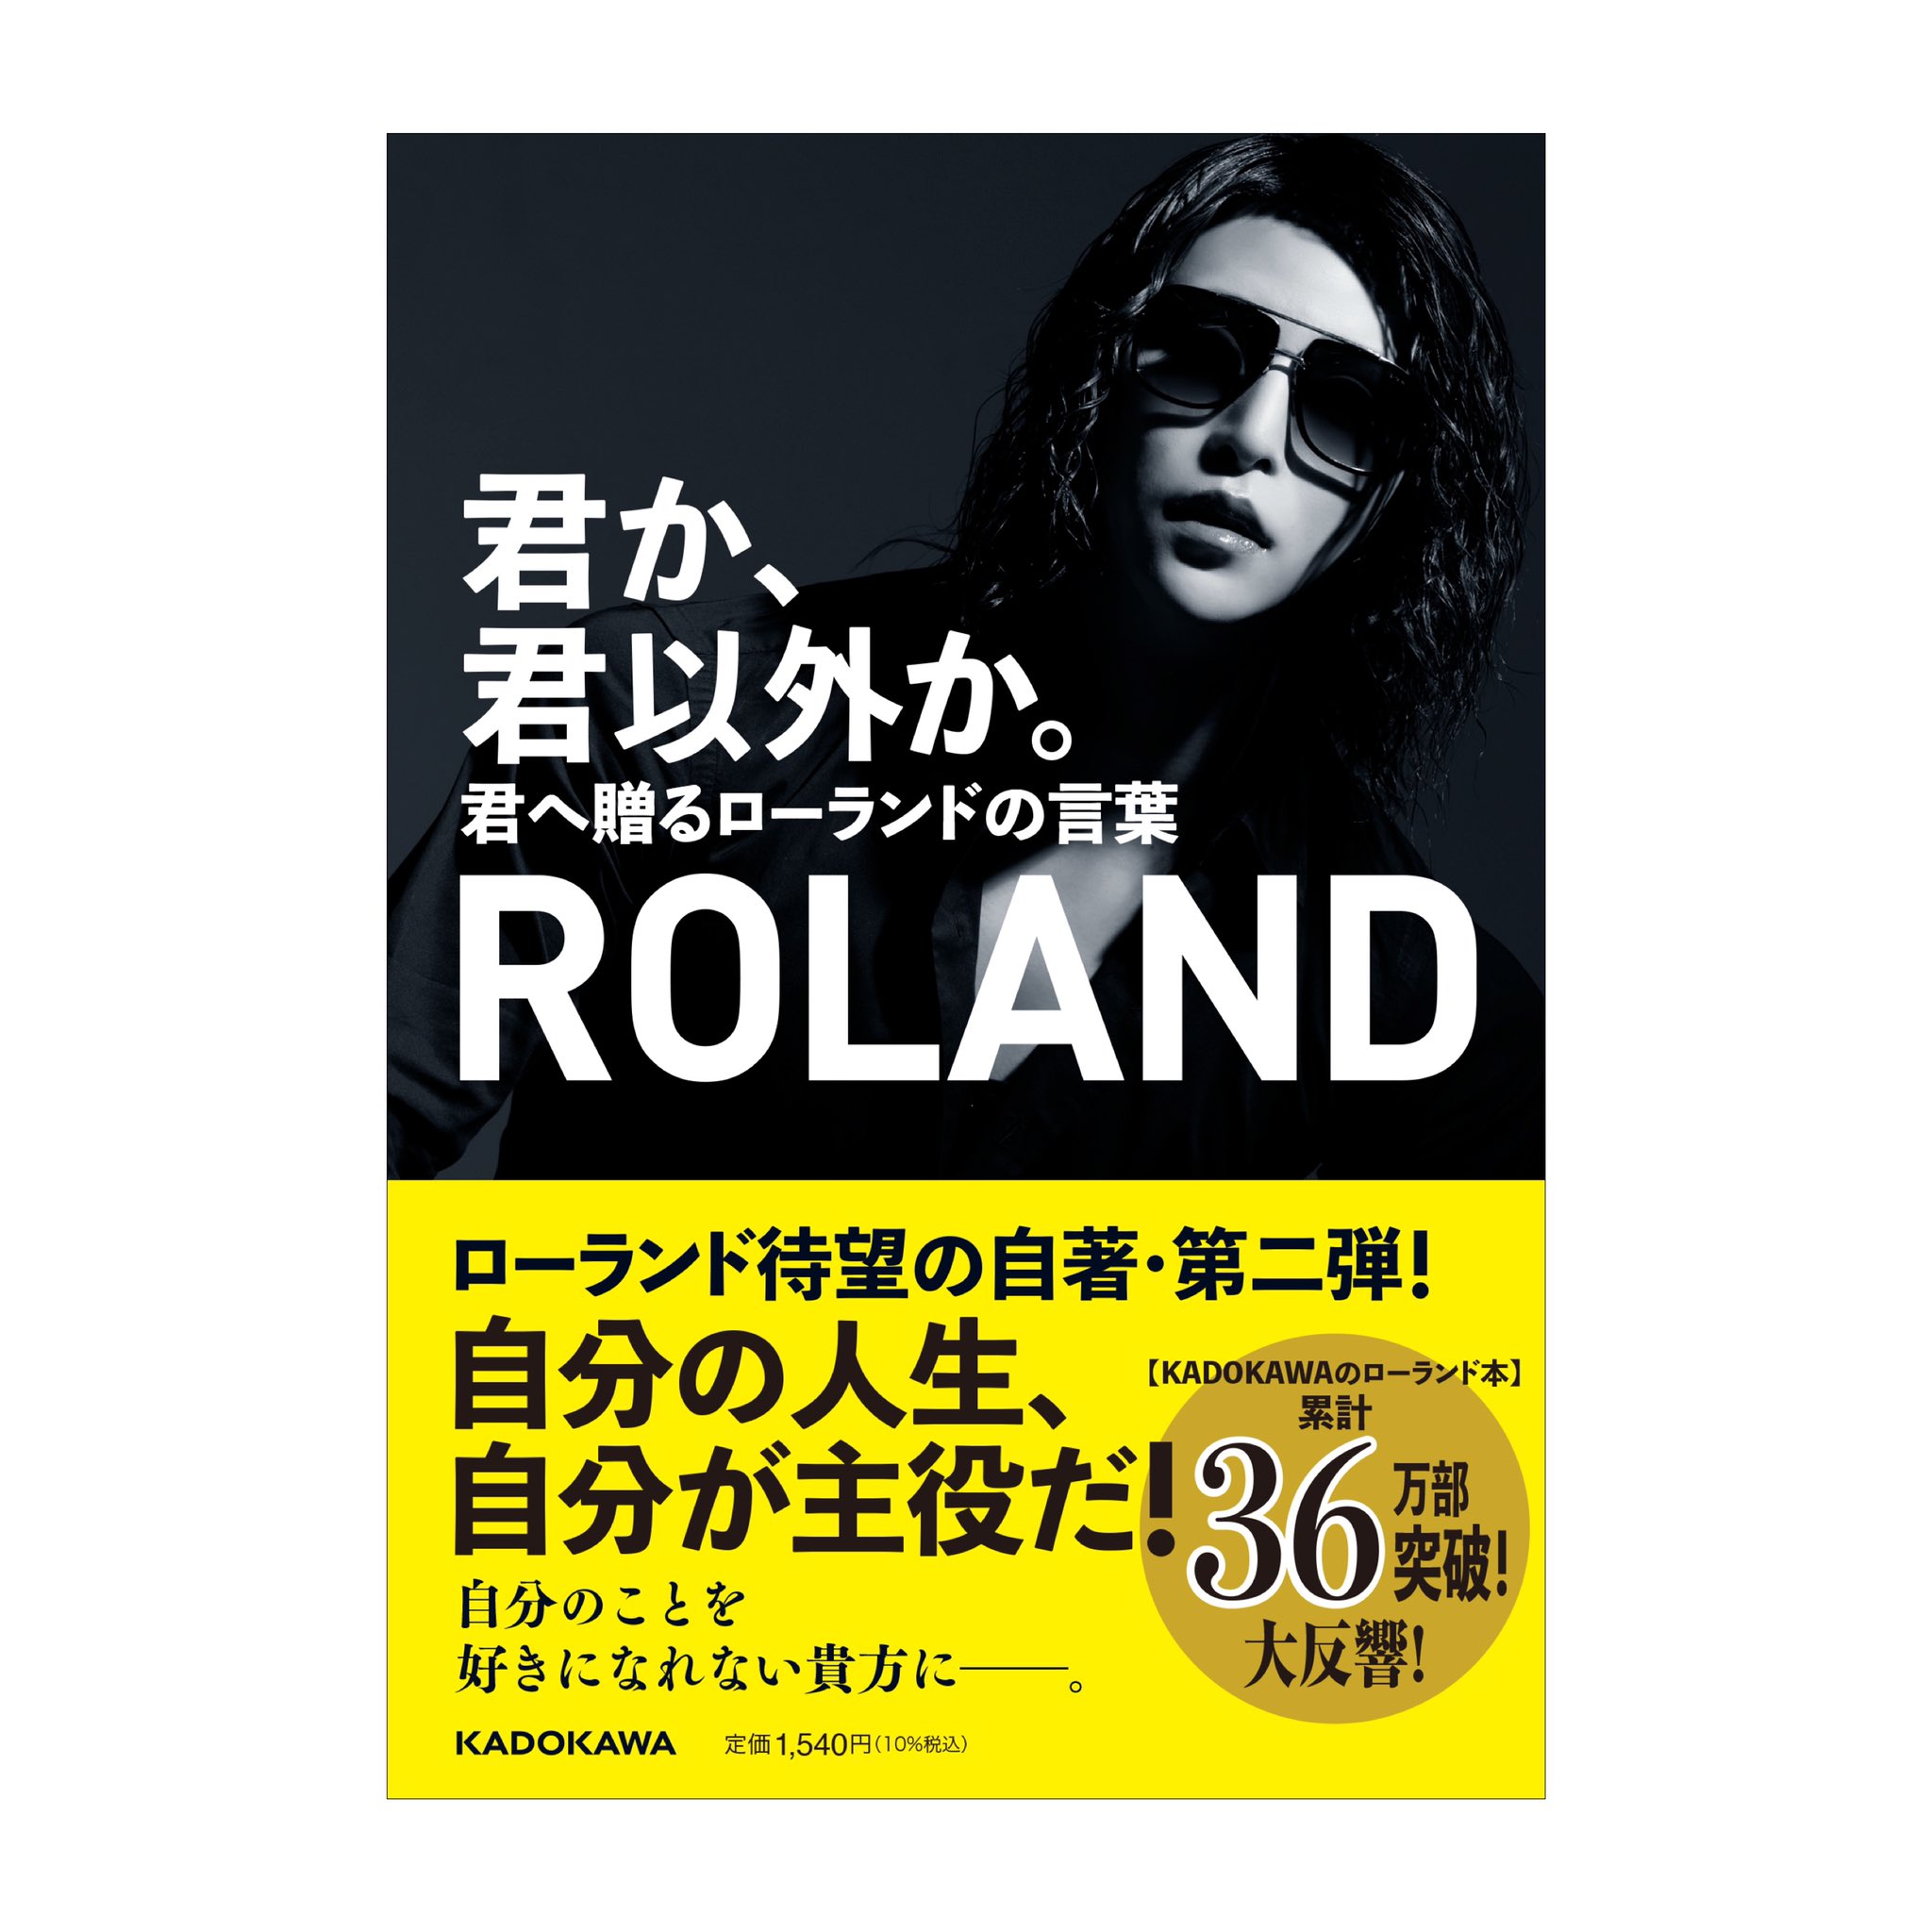 Roland ローランド Roland 0fficial Twitter